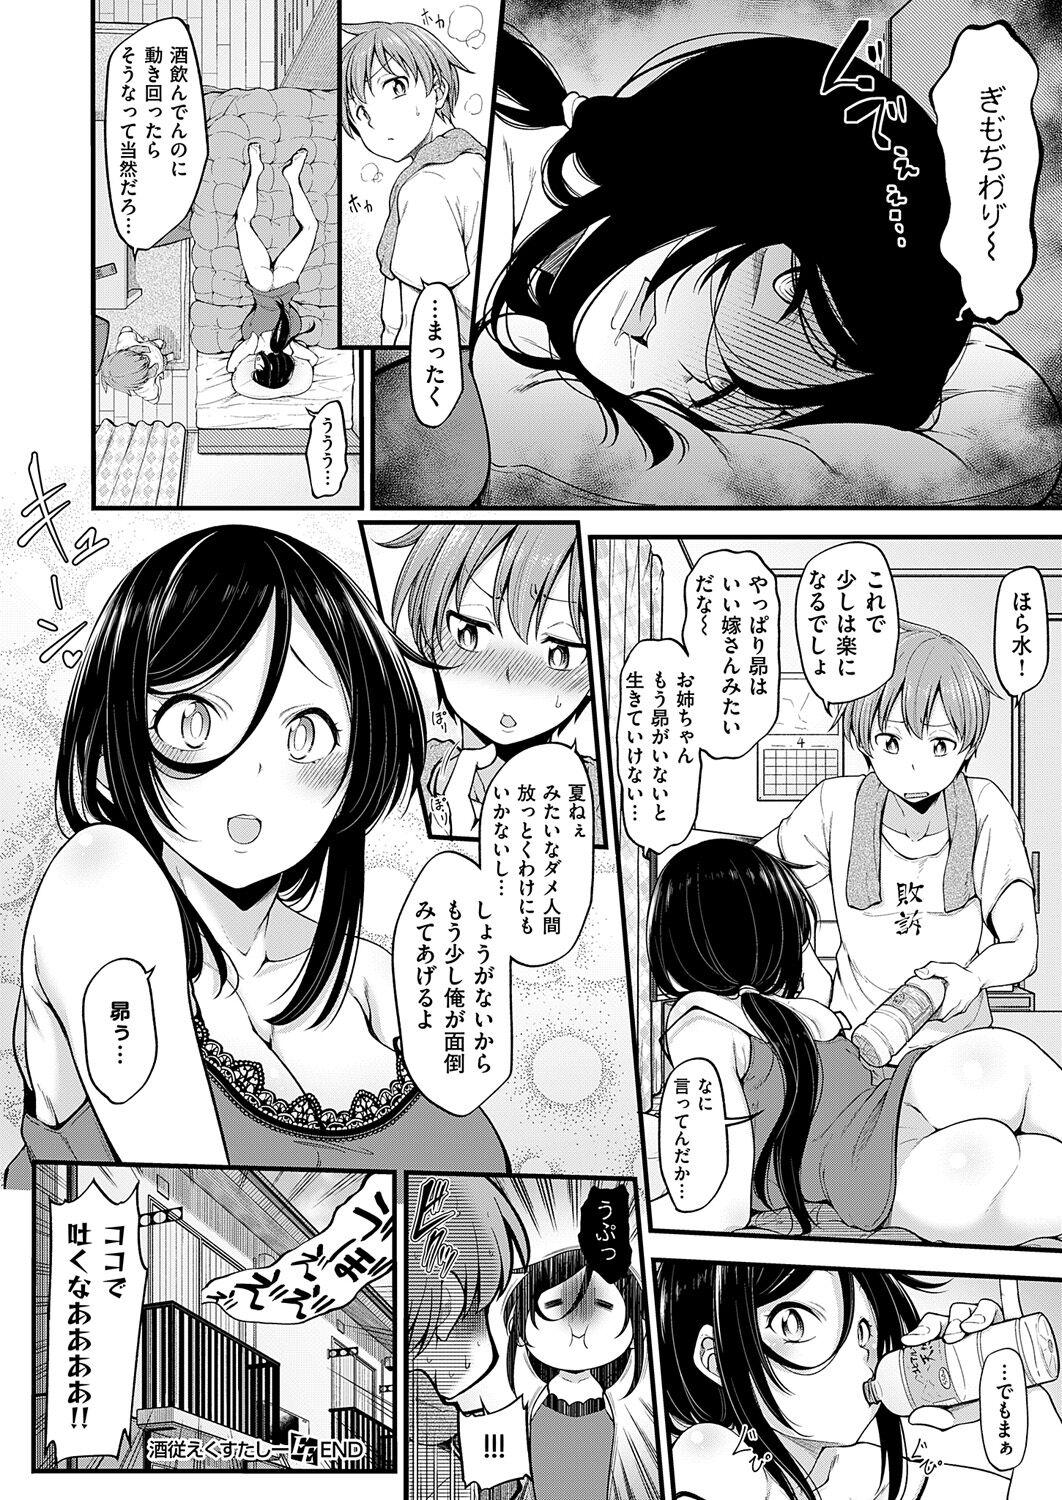 Submissive Shotta Paggn♡ Gordibuena - Page 134